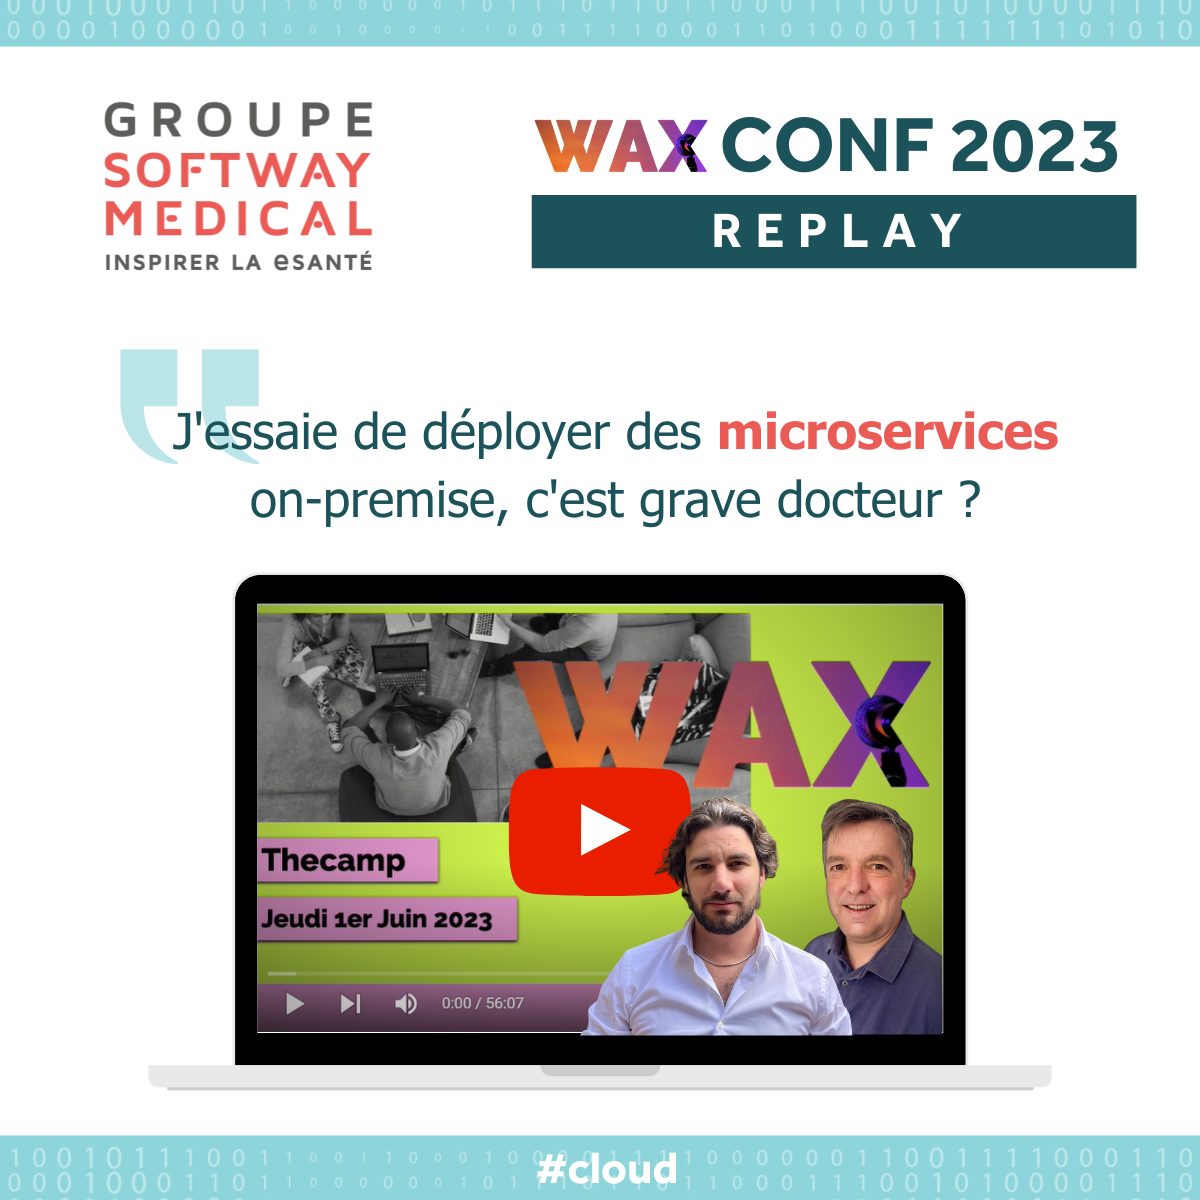 WAXCONF 2023 : J’essaie de déployer des microservices on-premise, c’est grave docteur ?